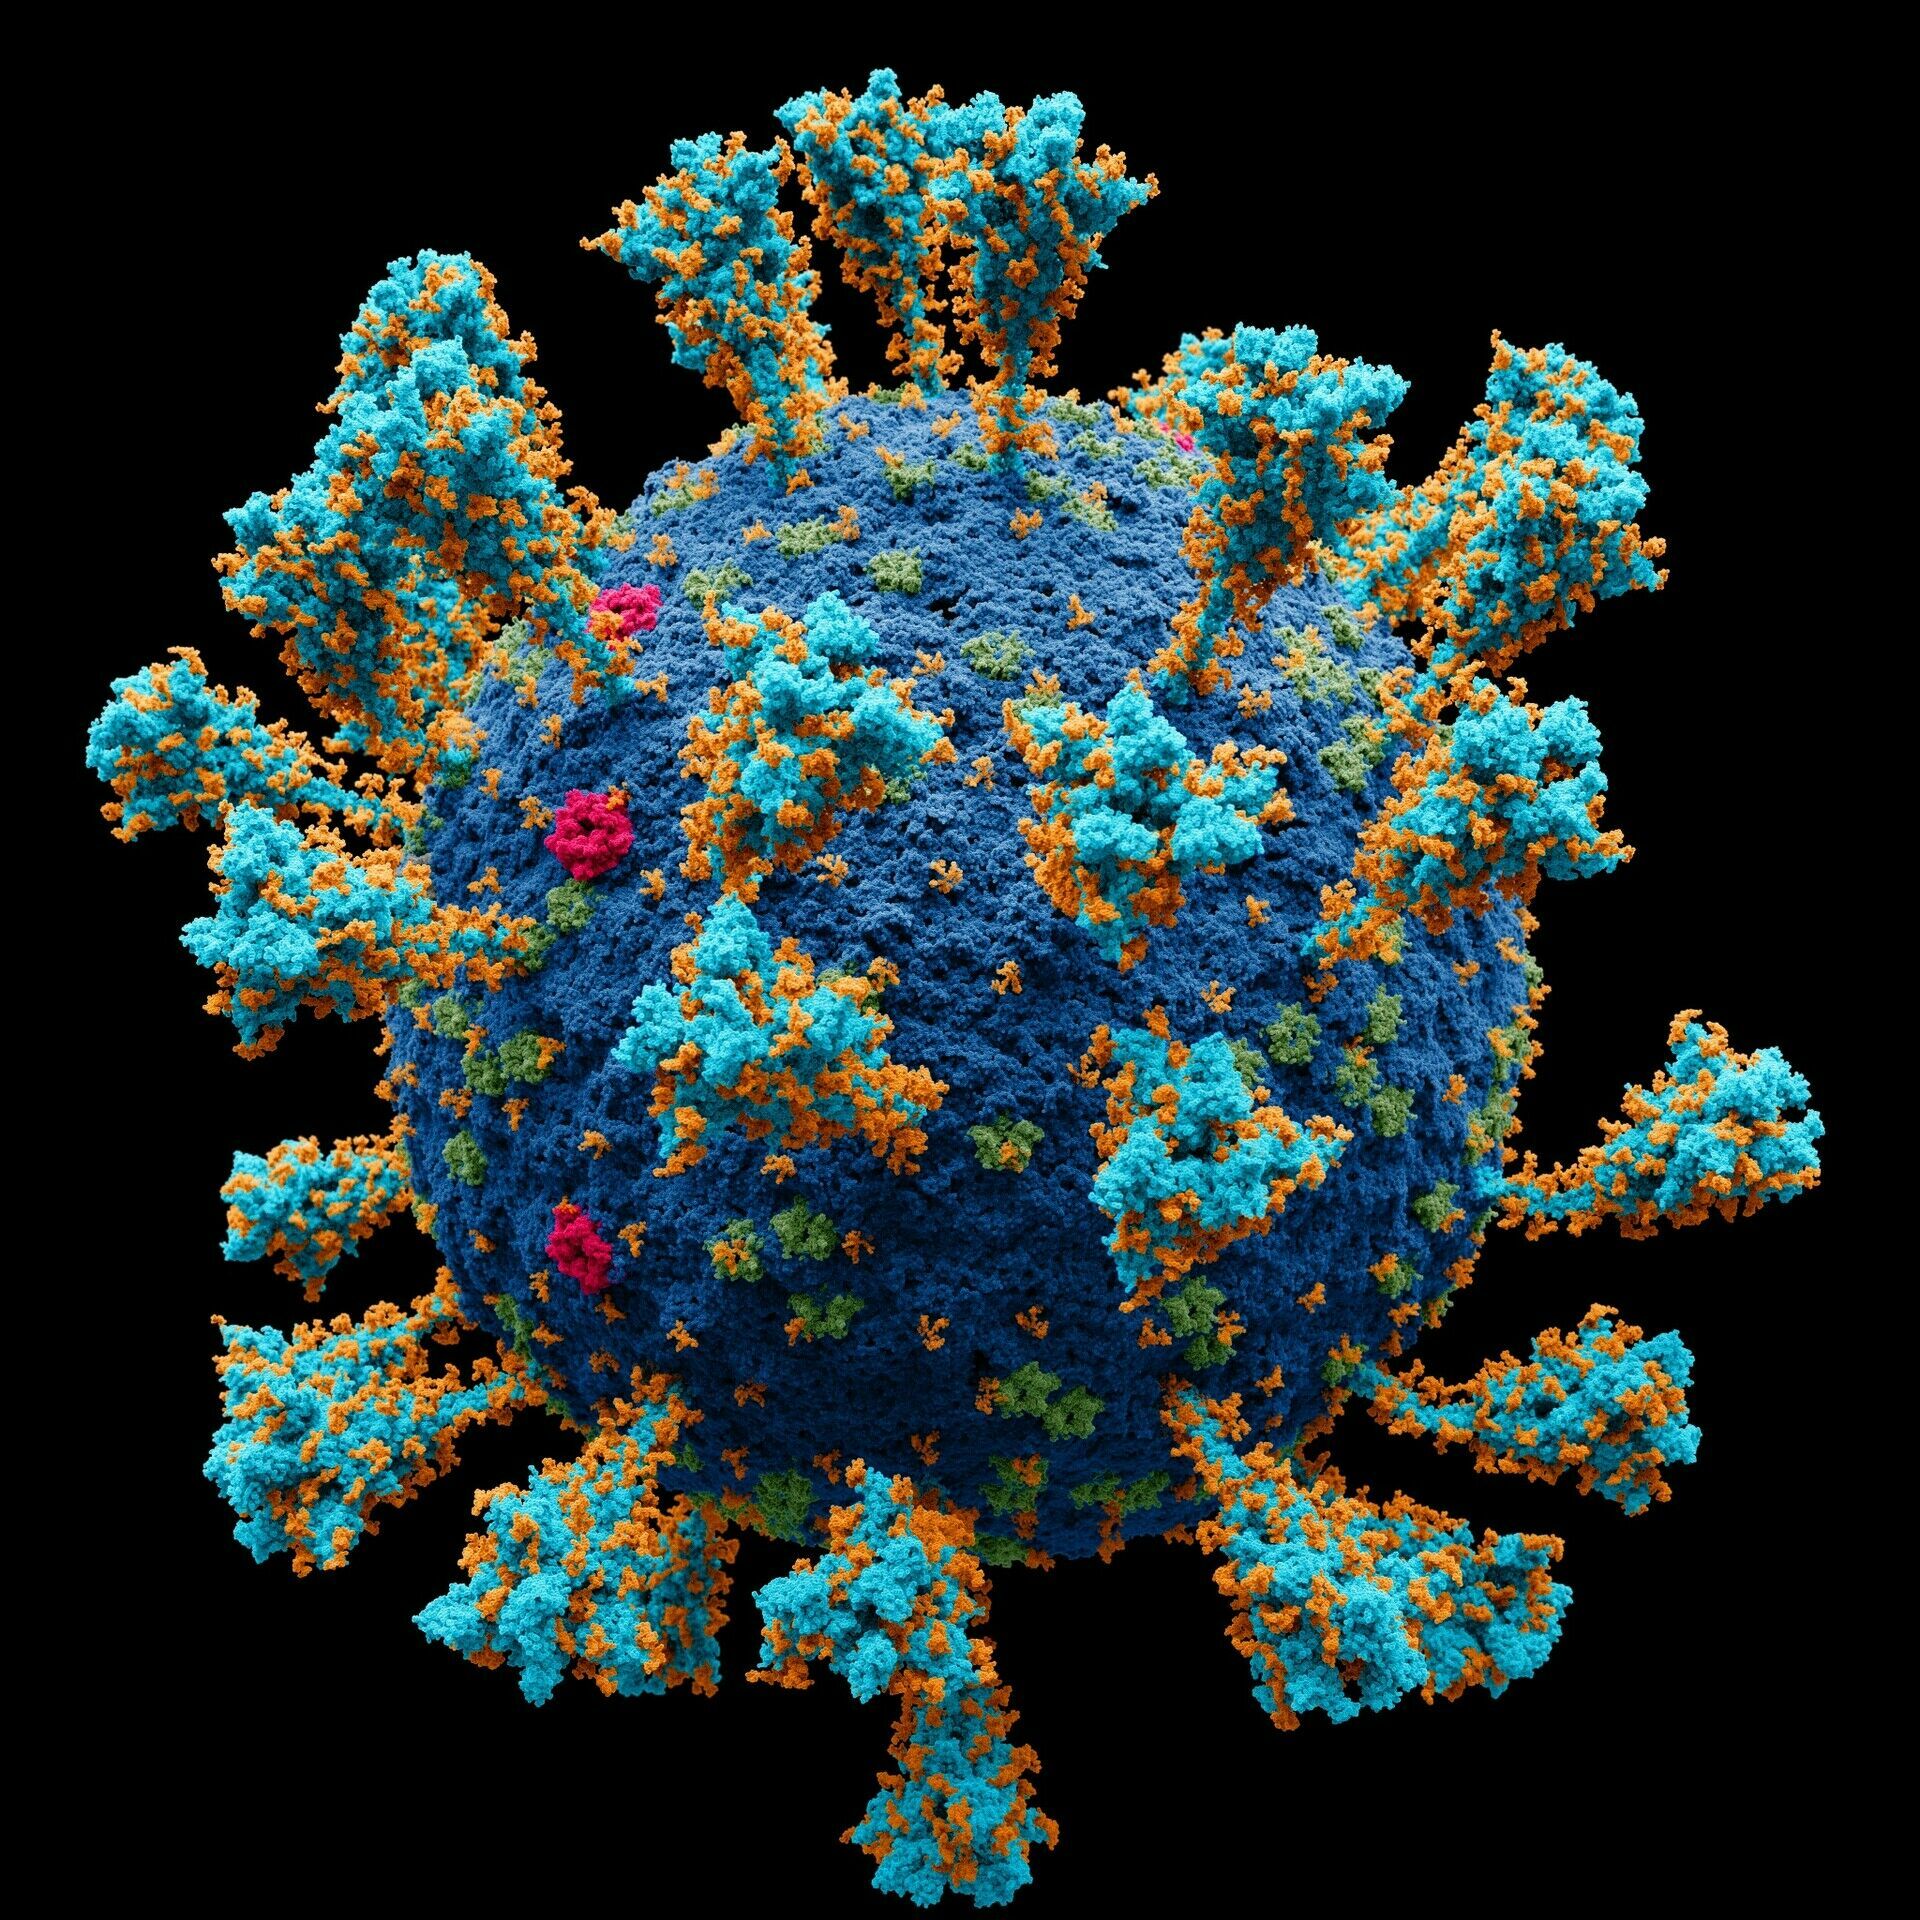 "Биологическая Энигма": одолеть коронавирус может математическое моделирование